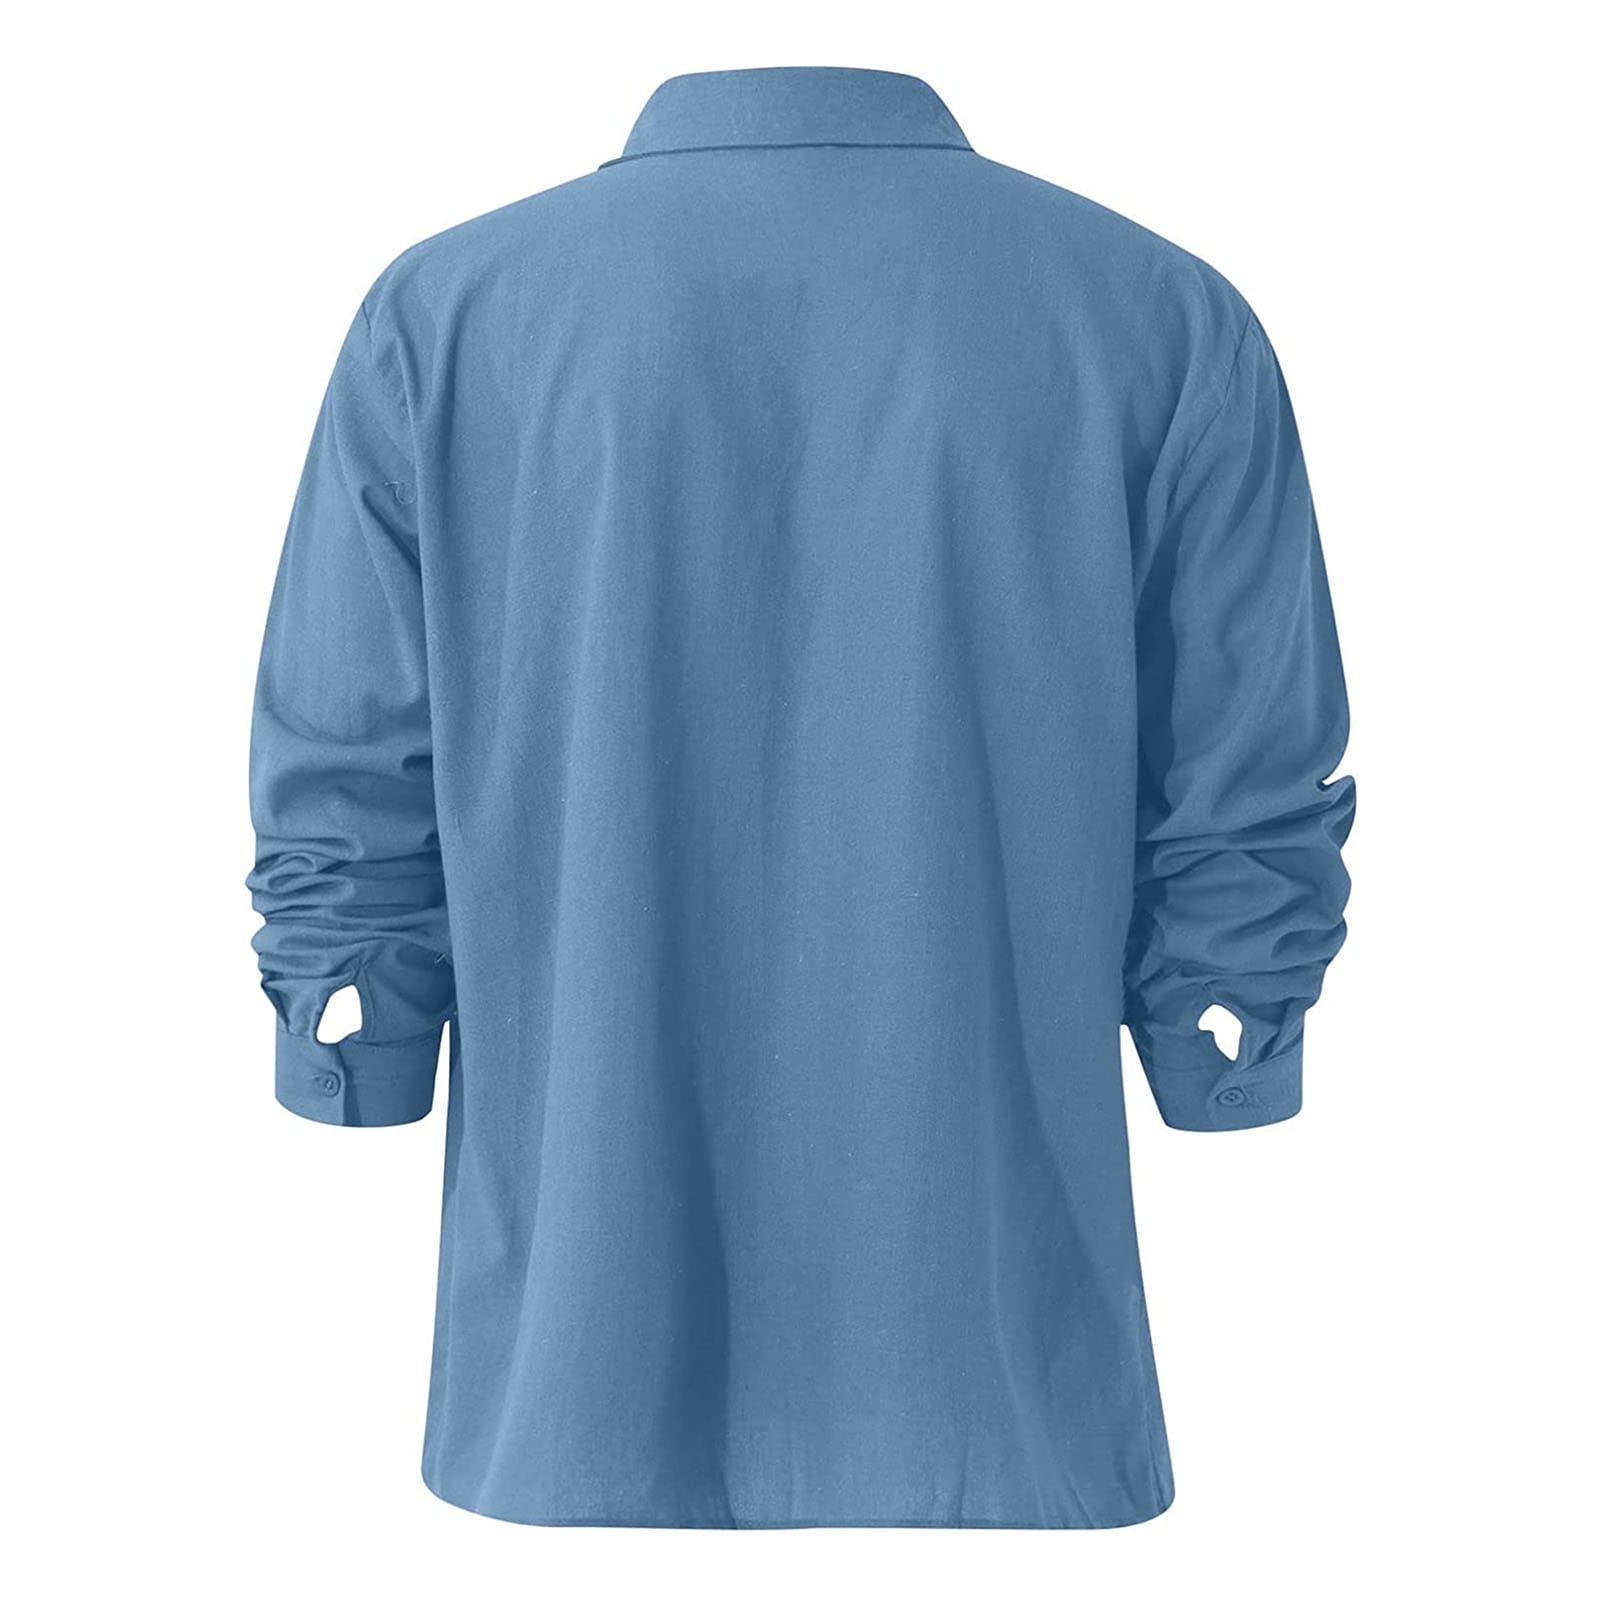 Men's Linen Button Down Shirts Casual Long Sleeve Summer Beach Shirt Tops Lightweight Solid Color Loose Fit Shirt (Light Blue,XX-Large)